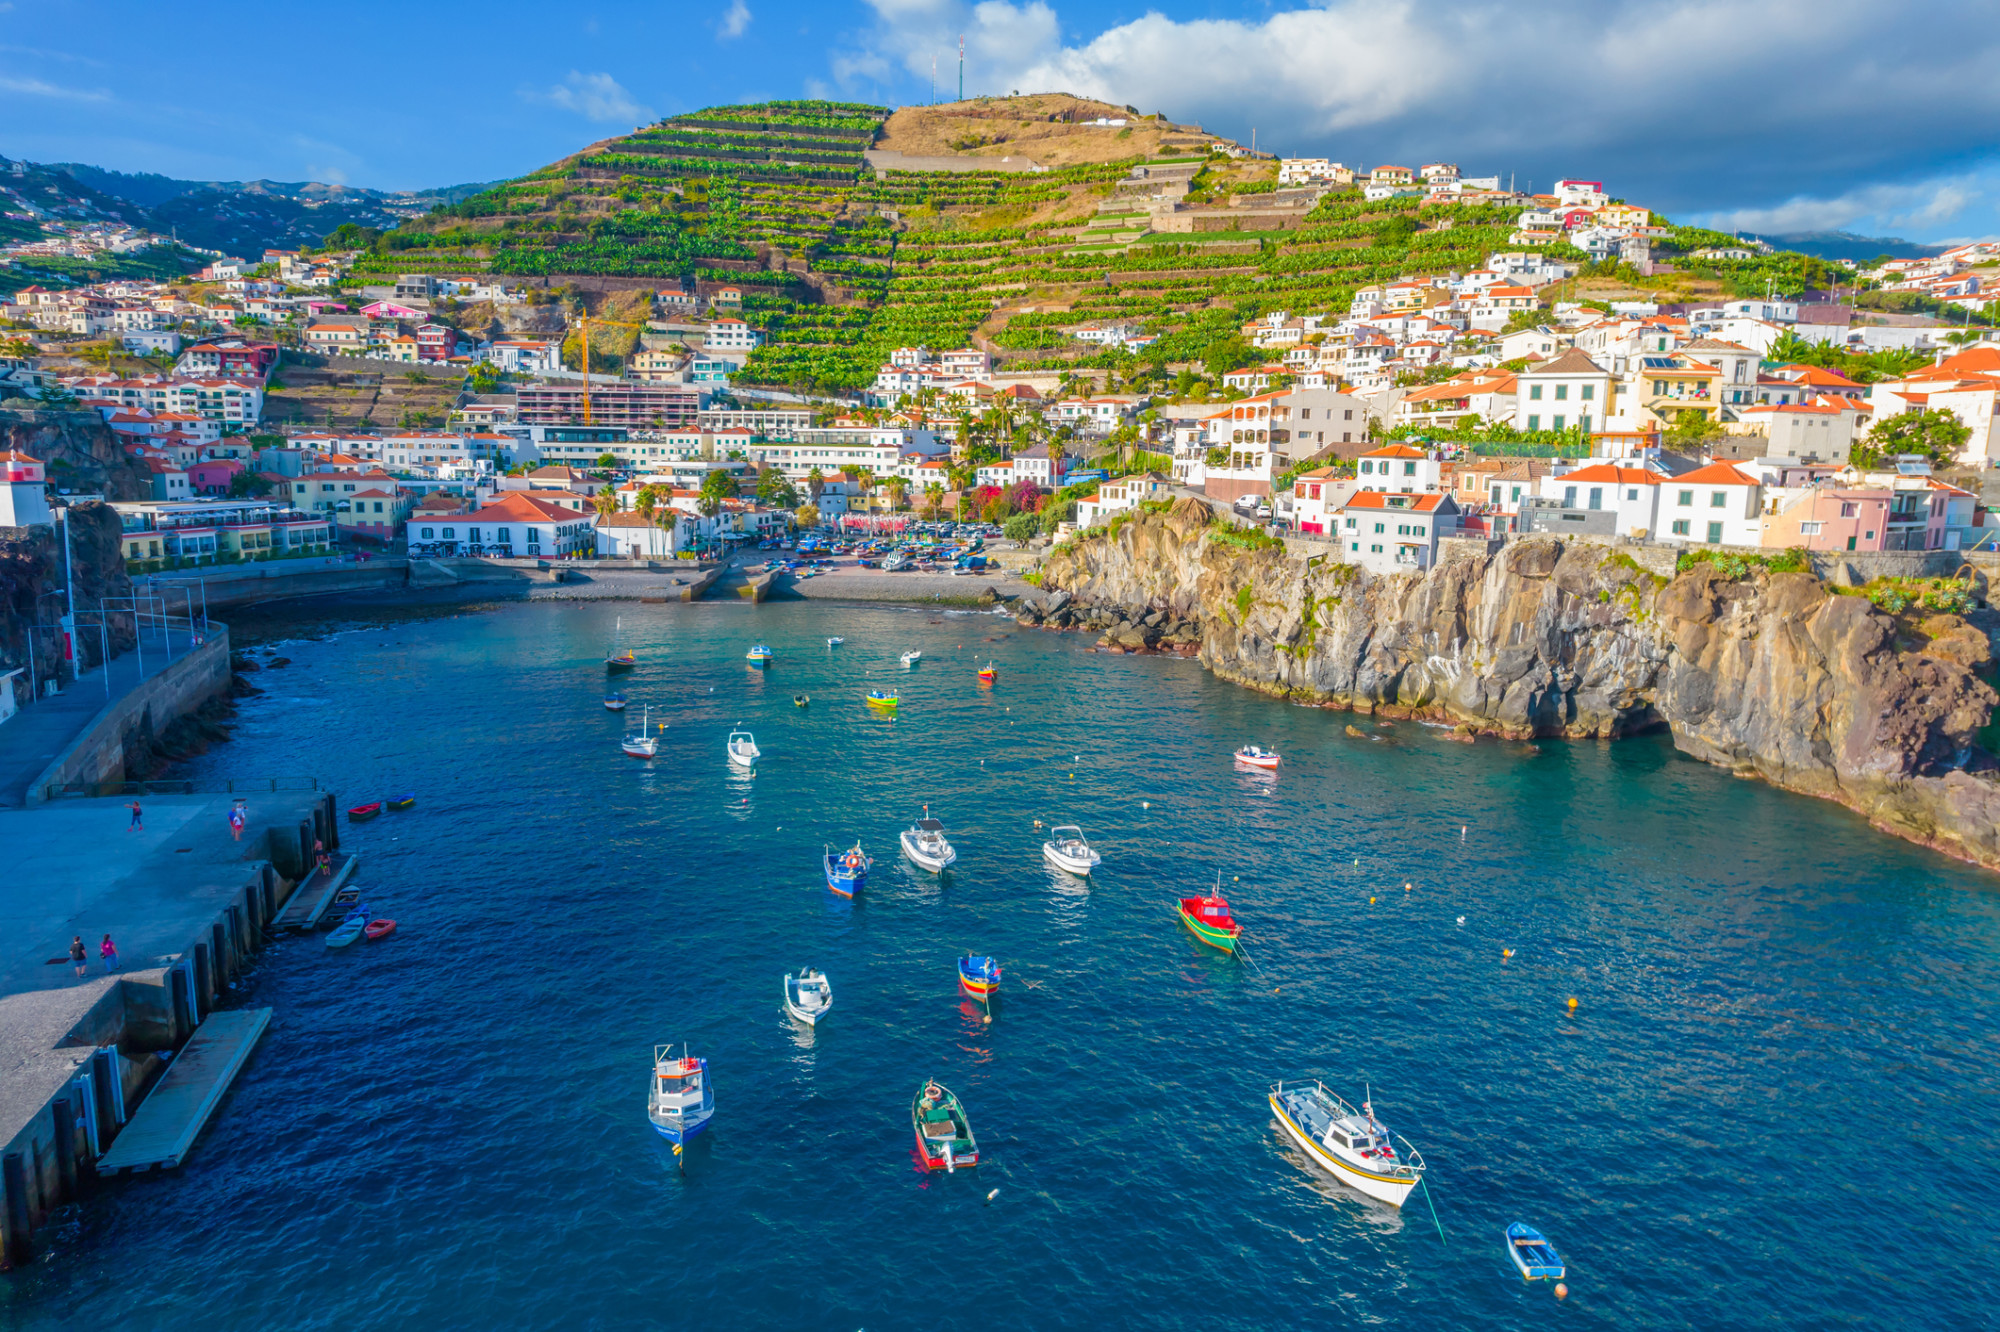 O saptamana in Madeira, insula primaverii eterne – 402 euro (zbor + cazare)